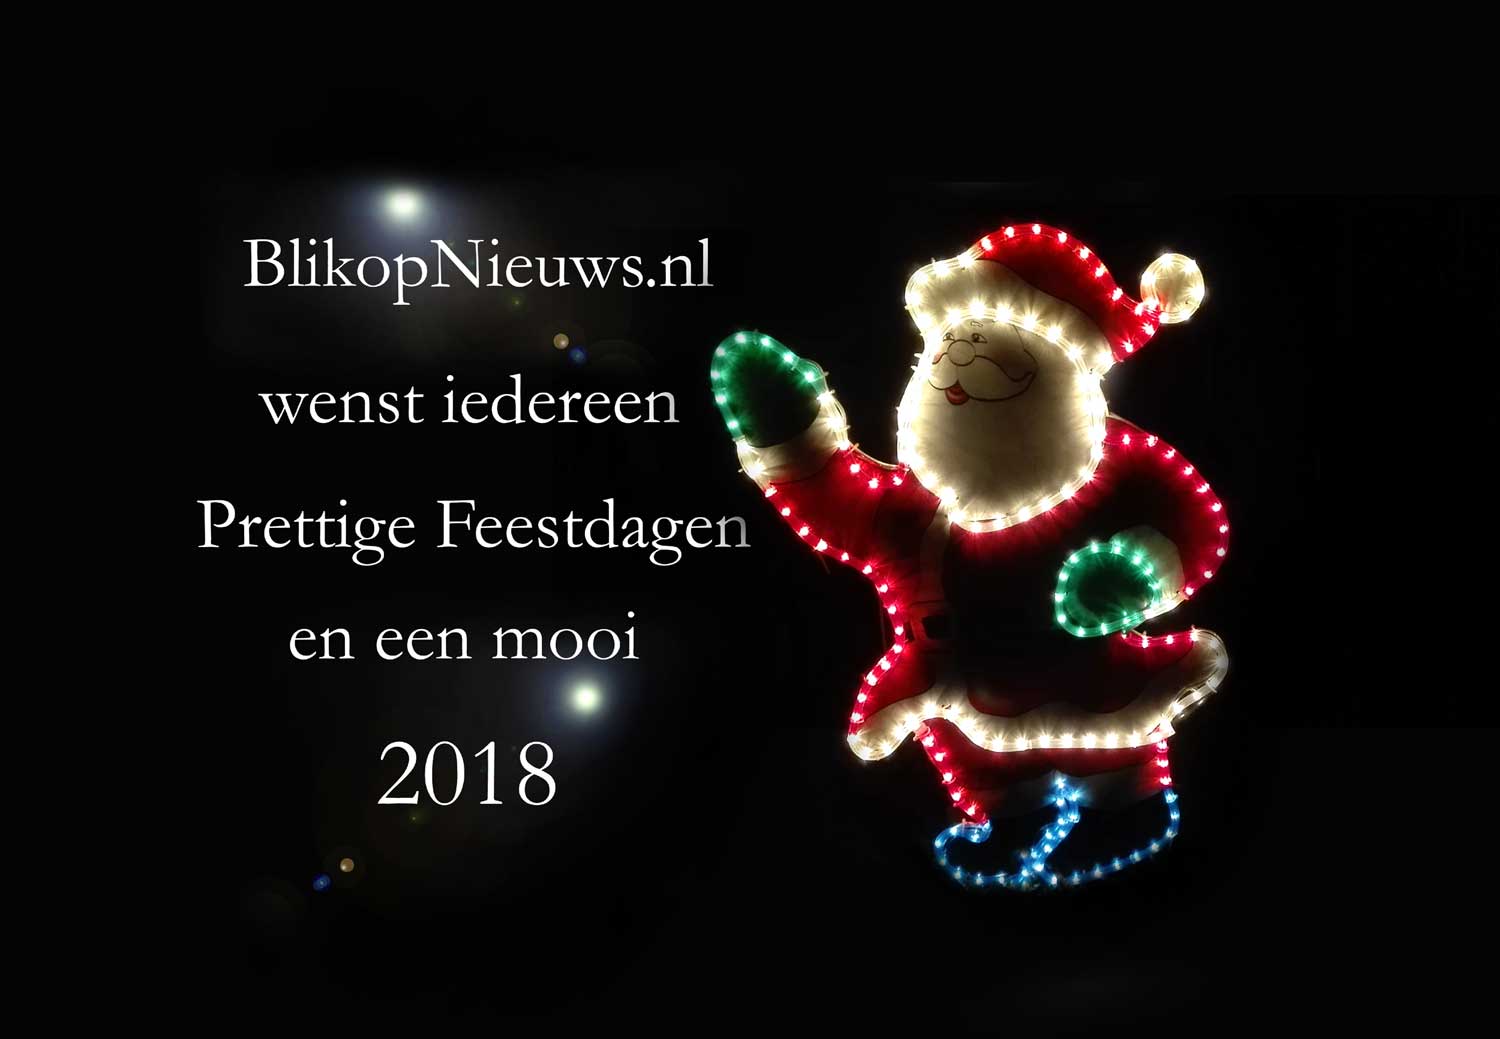 Jaaroverzicht 2017 BlikopNieuws.nl